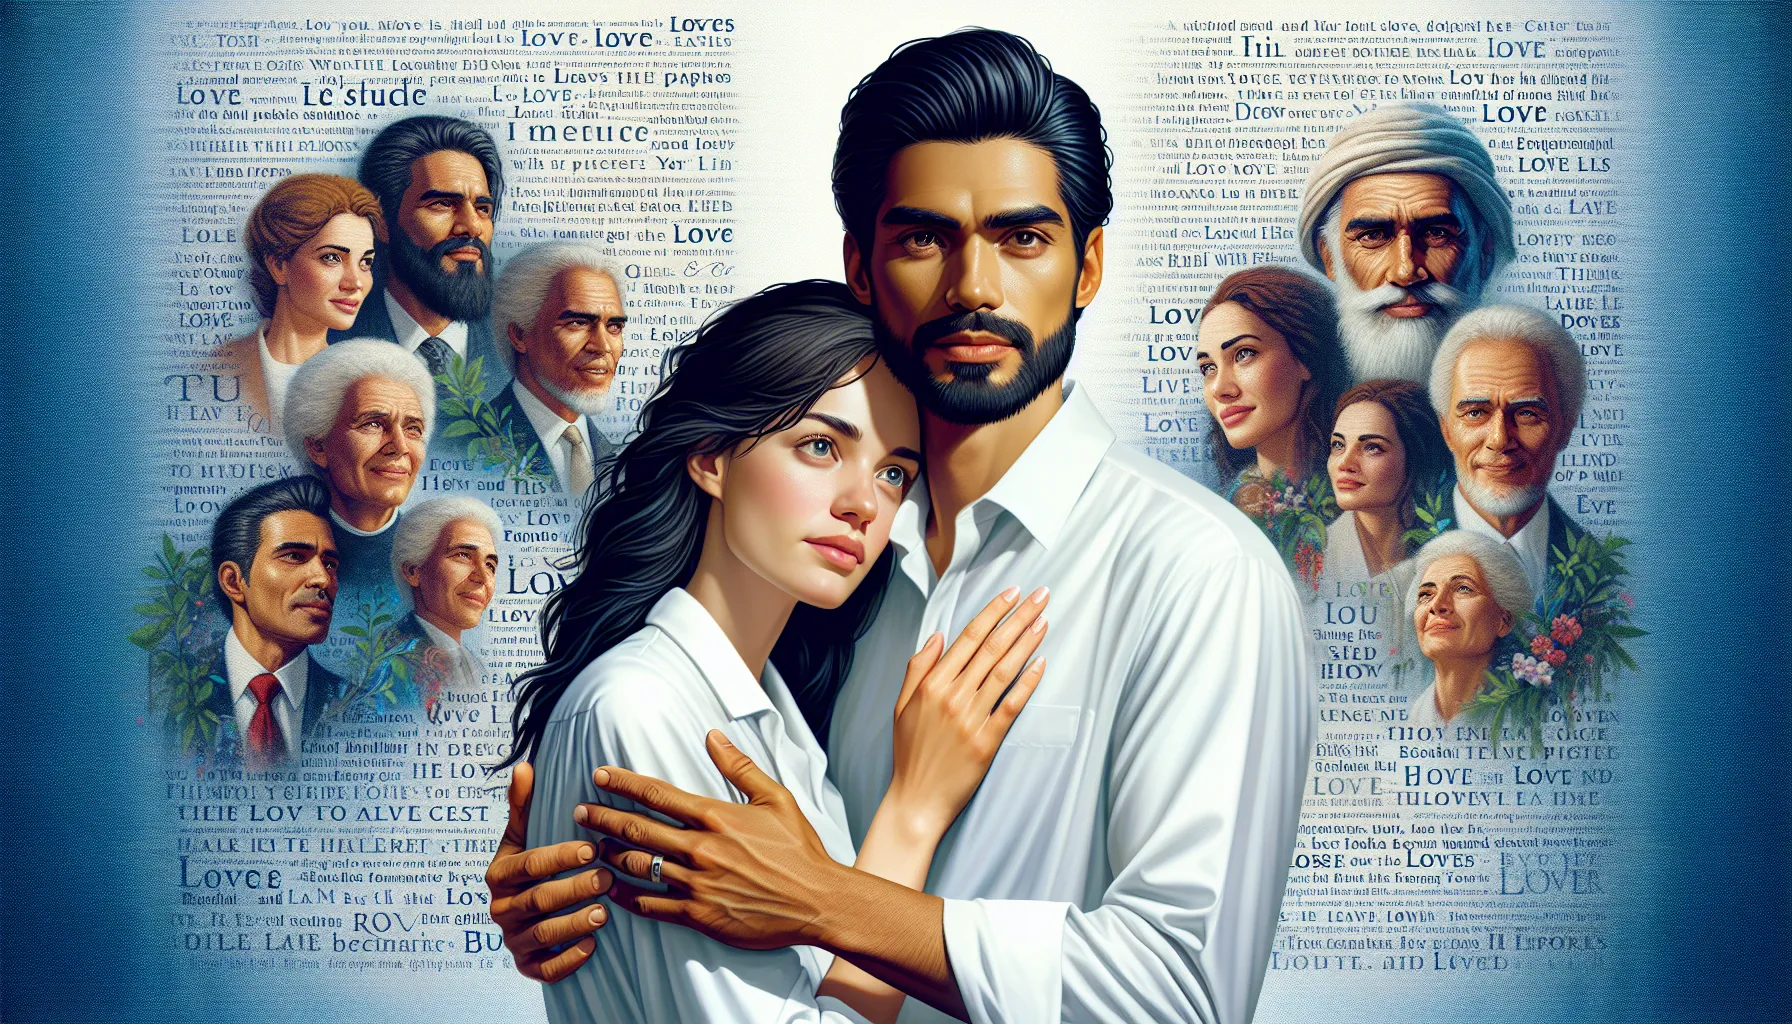 Imagen destacada: Ilustración de una pareja abrazándose con un fondo de versículos bíblicos sobre el amor.